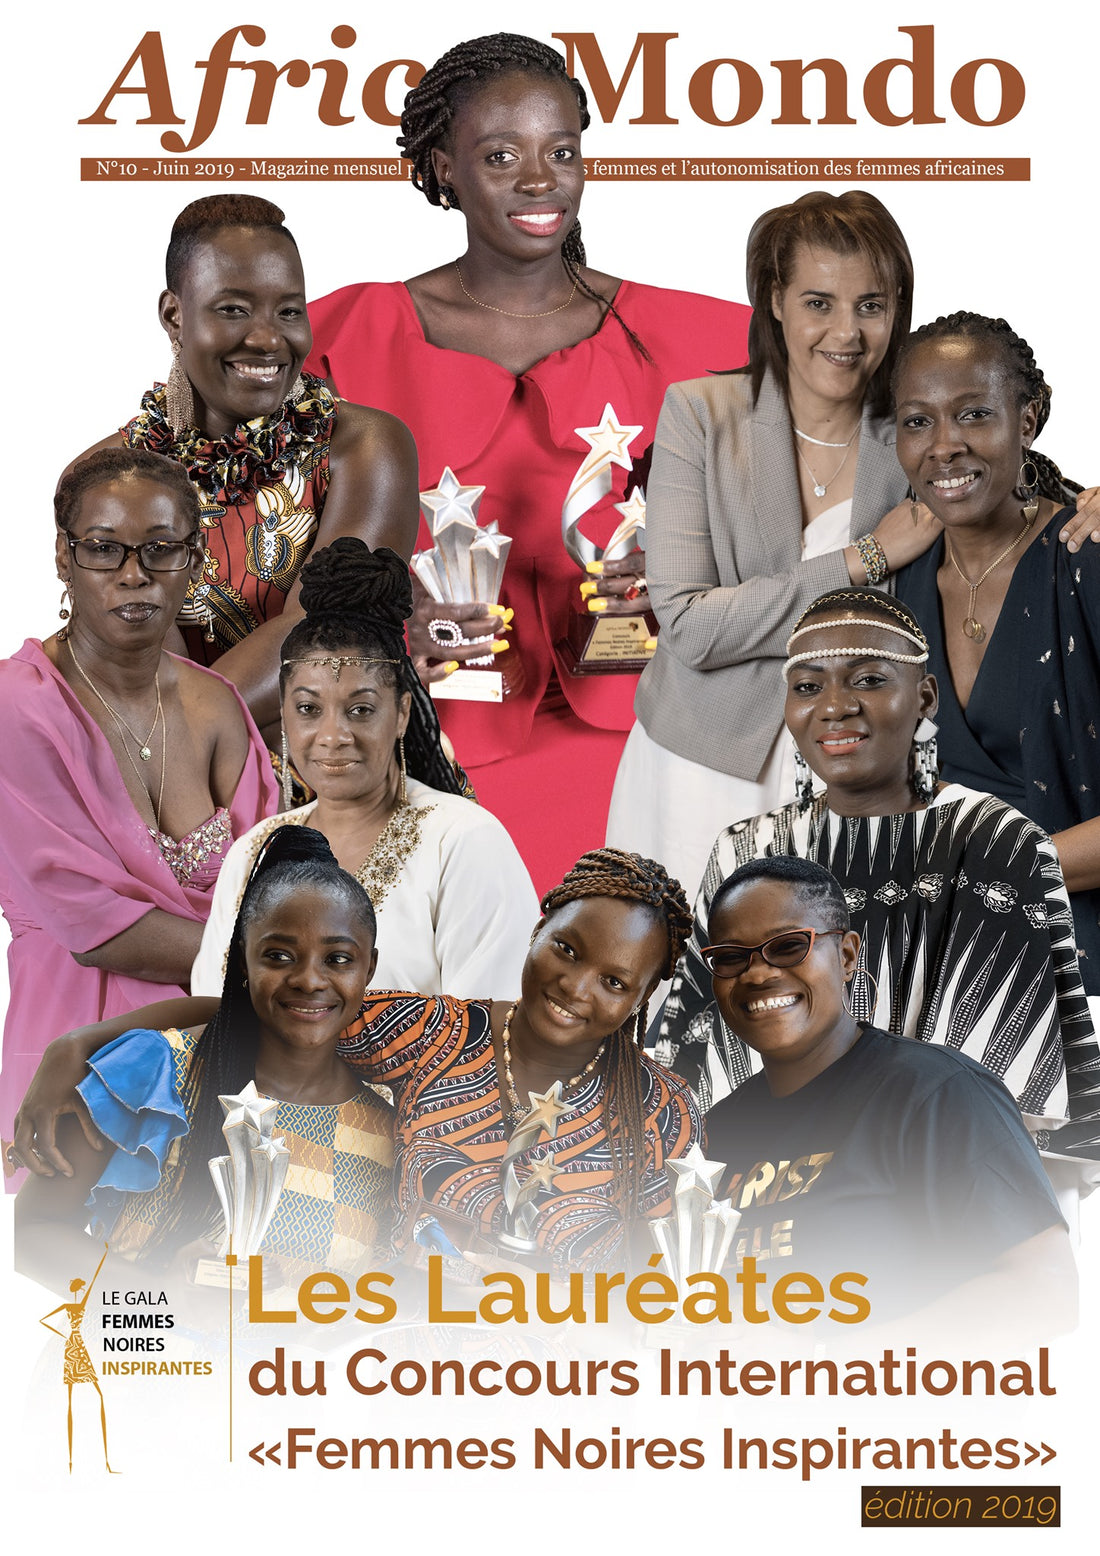 Le Sénégal rafle deux prix au Concours « Femmes noires inspirantes » avec Angélique Marguerite Berthe Diène et Stefdekarda